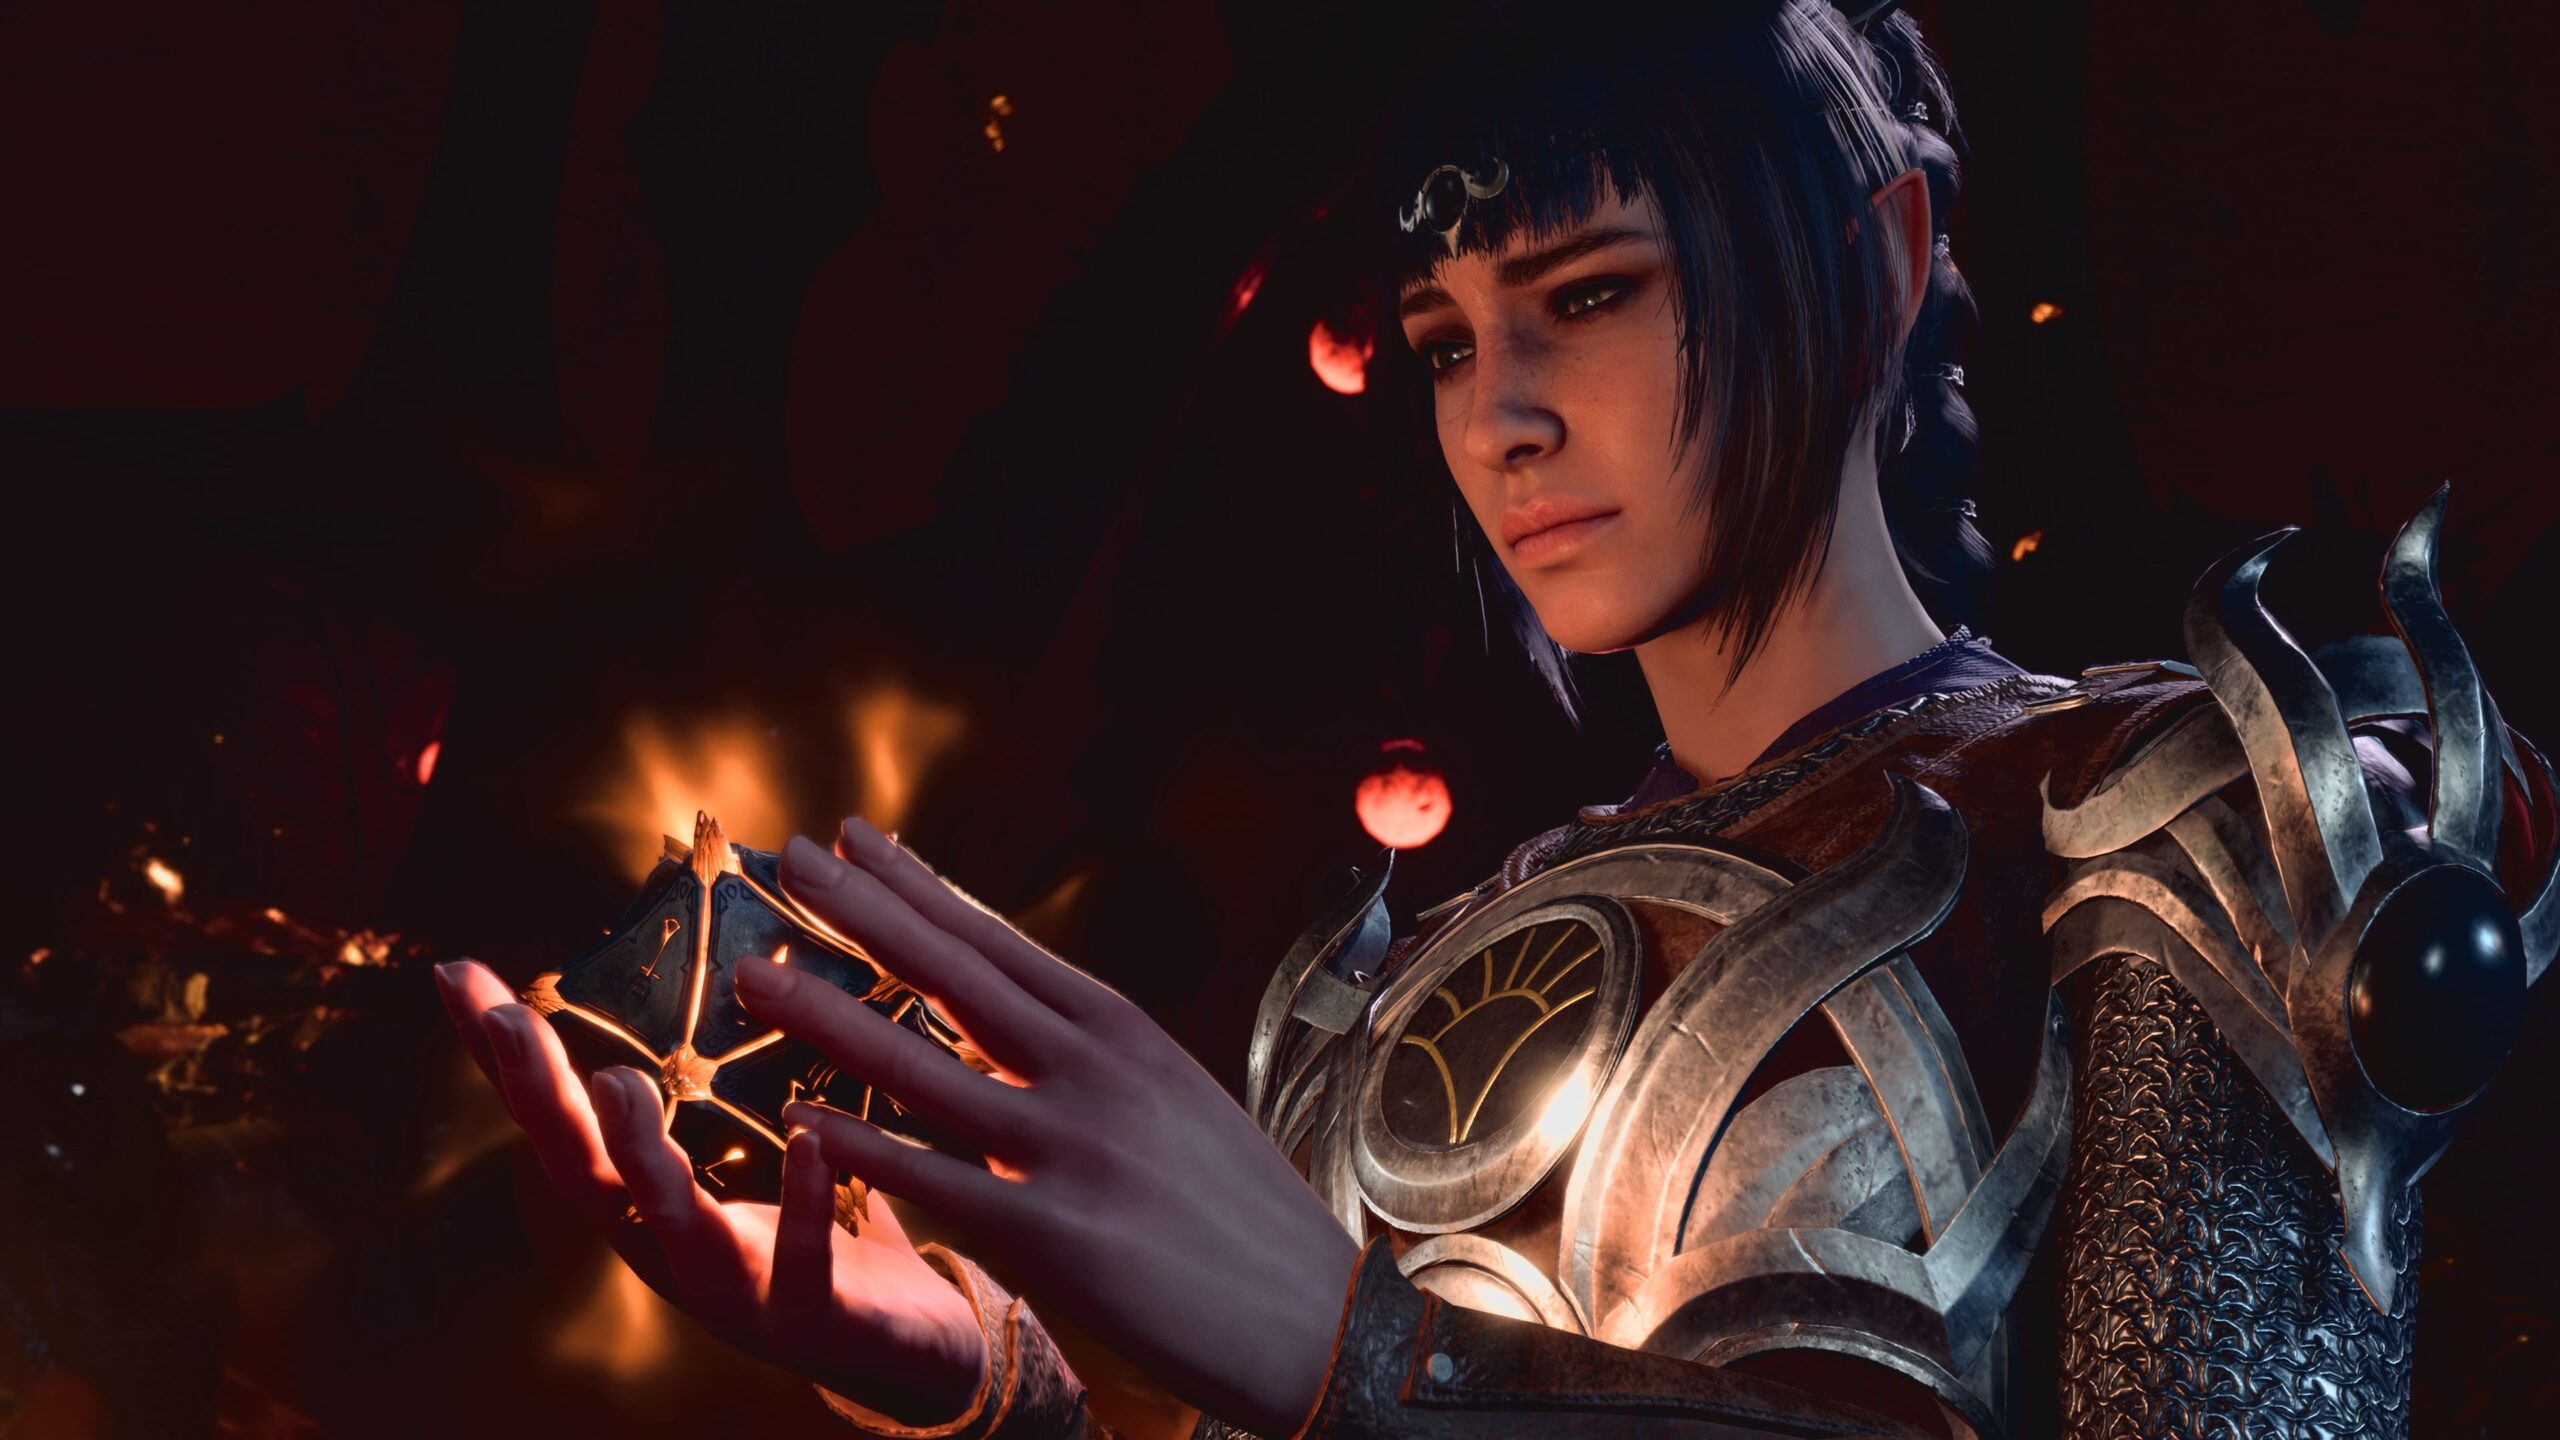 Kobieta w zbroi trzymająca świecący magiczny artefakt w dłoniach, na tle ciemnego, rozmytego otoczenia z iskrami ognia.